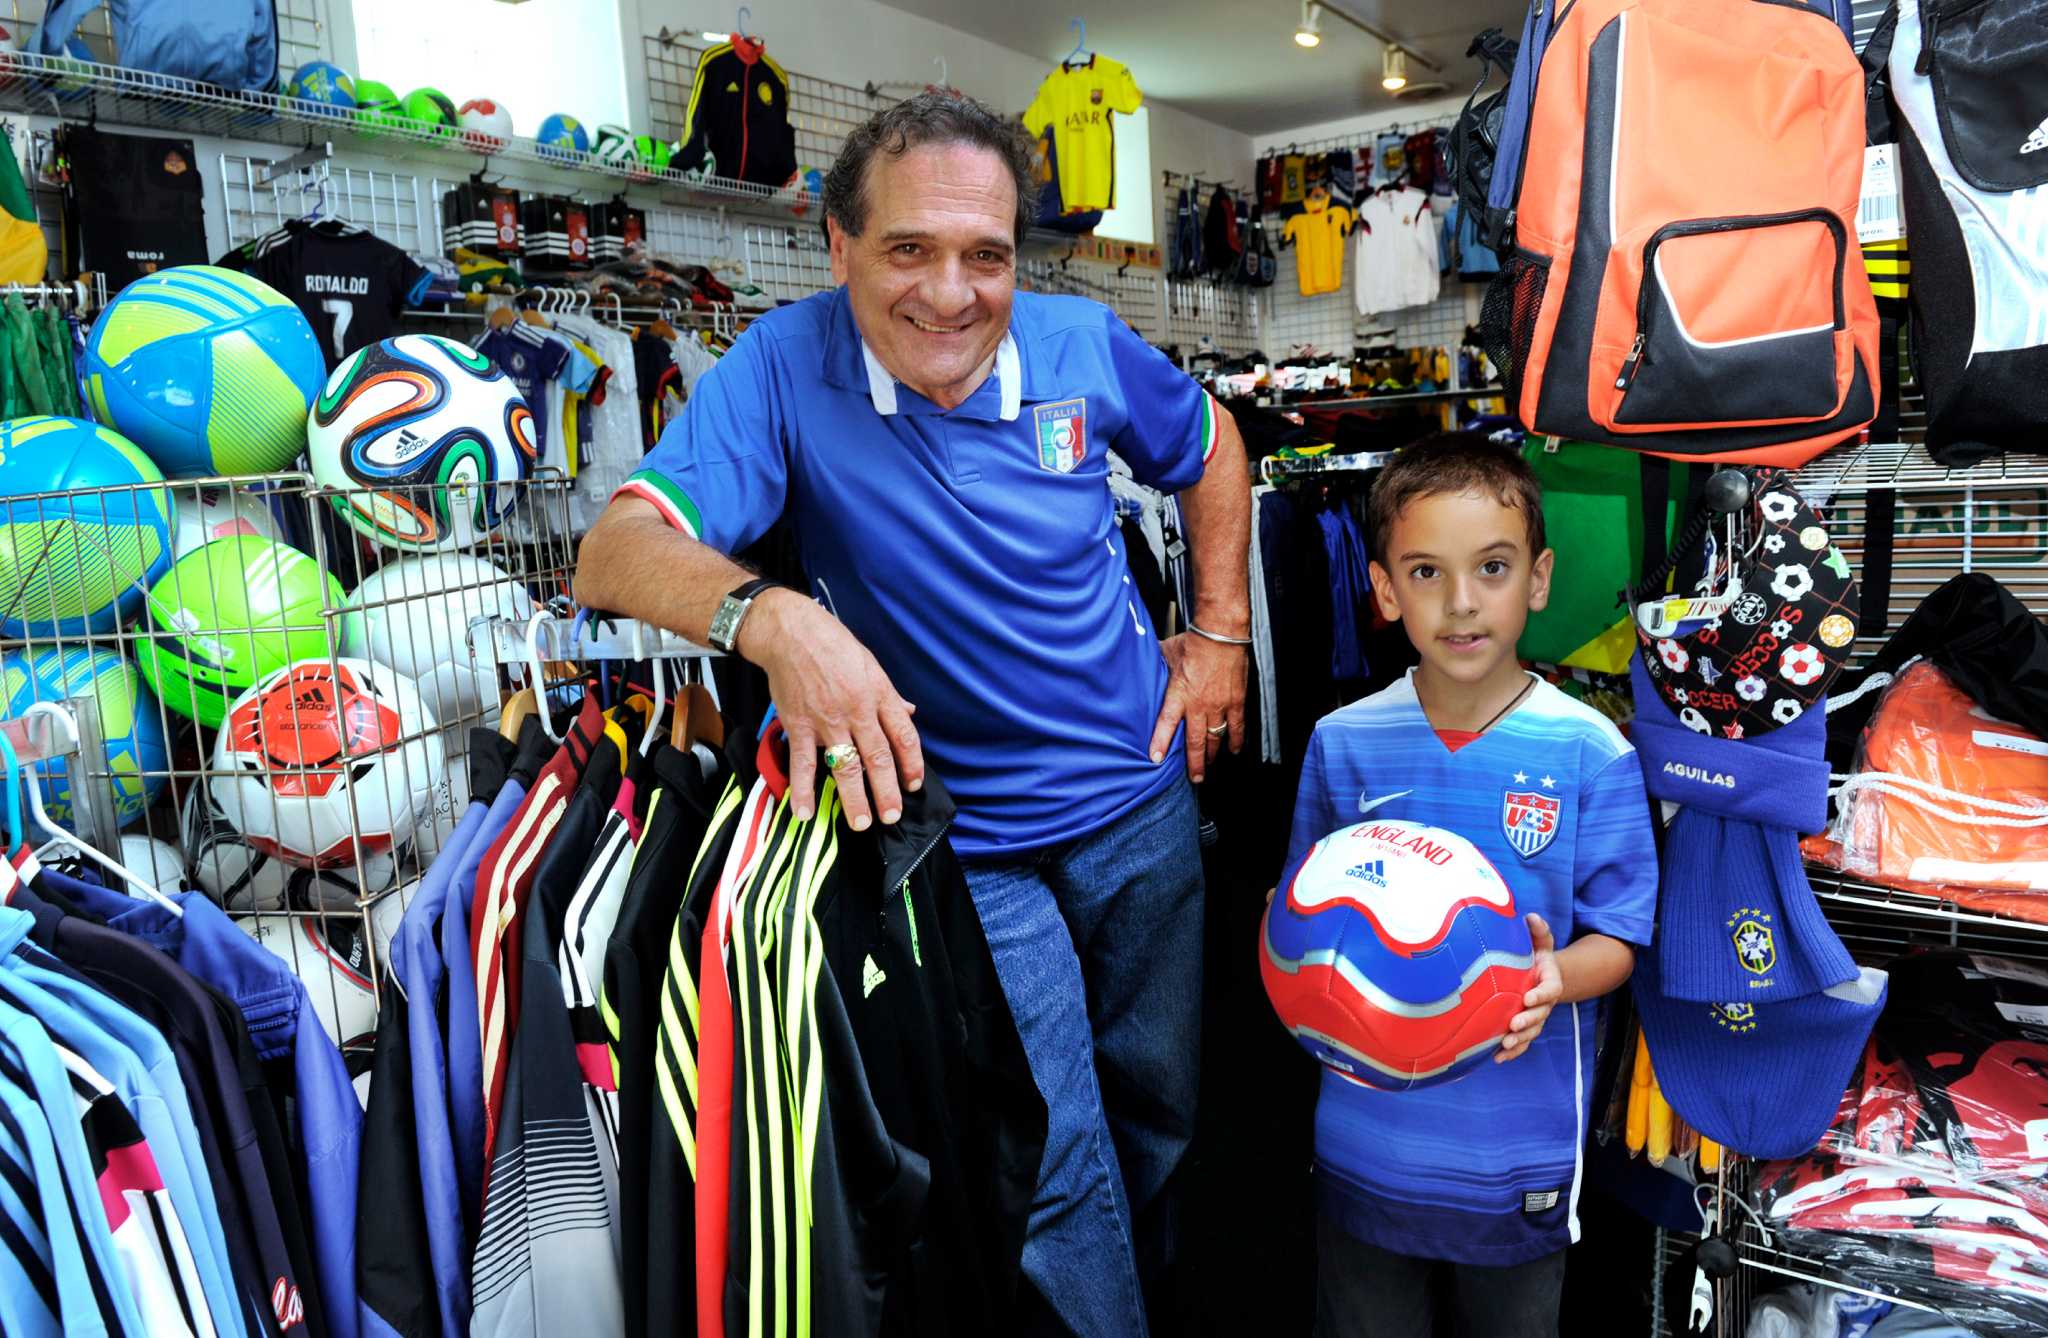 International soccer shop opens in Danbury